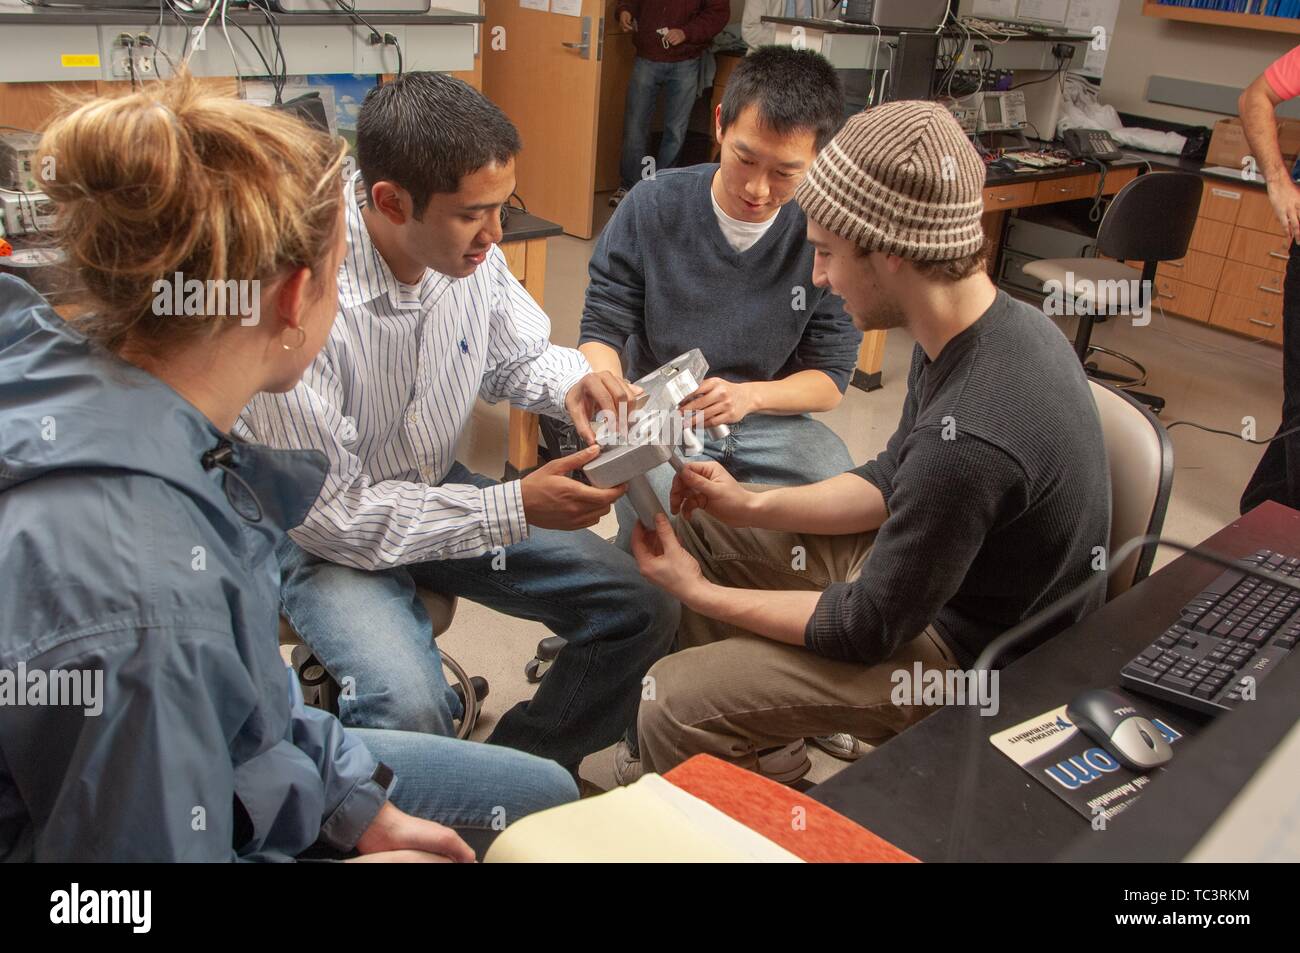 Eine kleine Gruppe der Biomedizinischen Technik und Innovation Design Studenten arbeiten zusammen an der Johns Hopkins Universität, Baltimore, Maryland, 12. Februar 2007. Vom Homewood Sammlung Fotografie. () Stockfoto